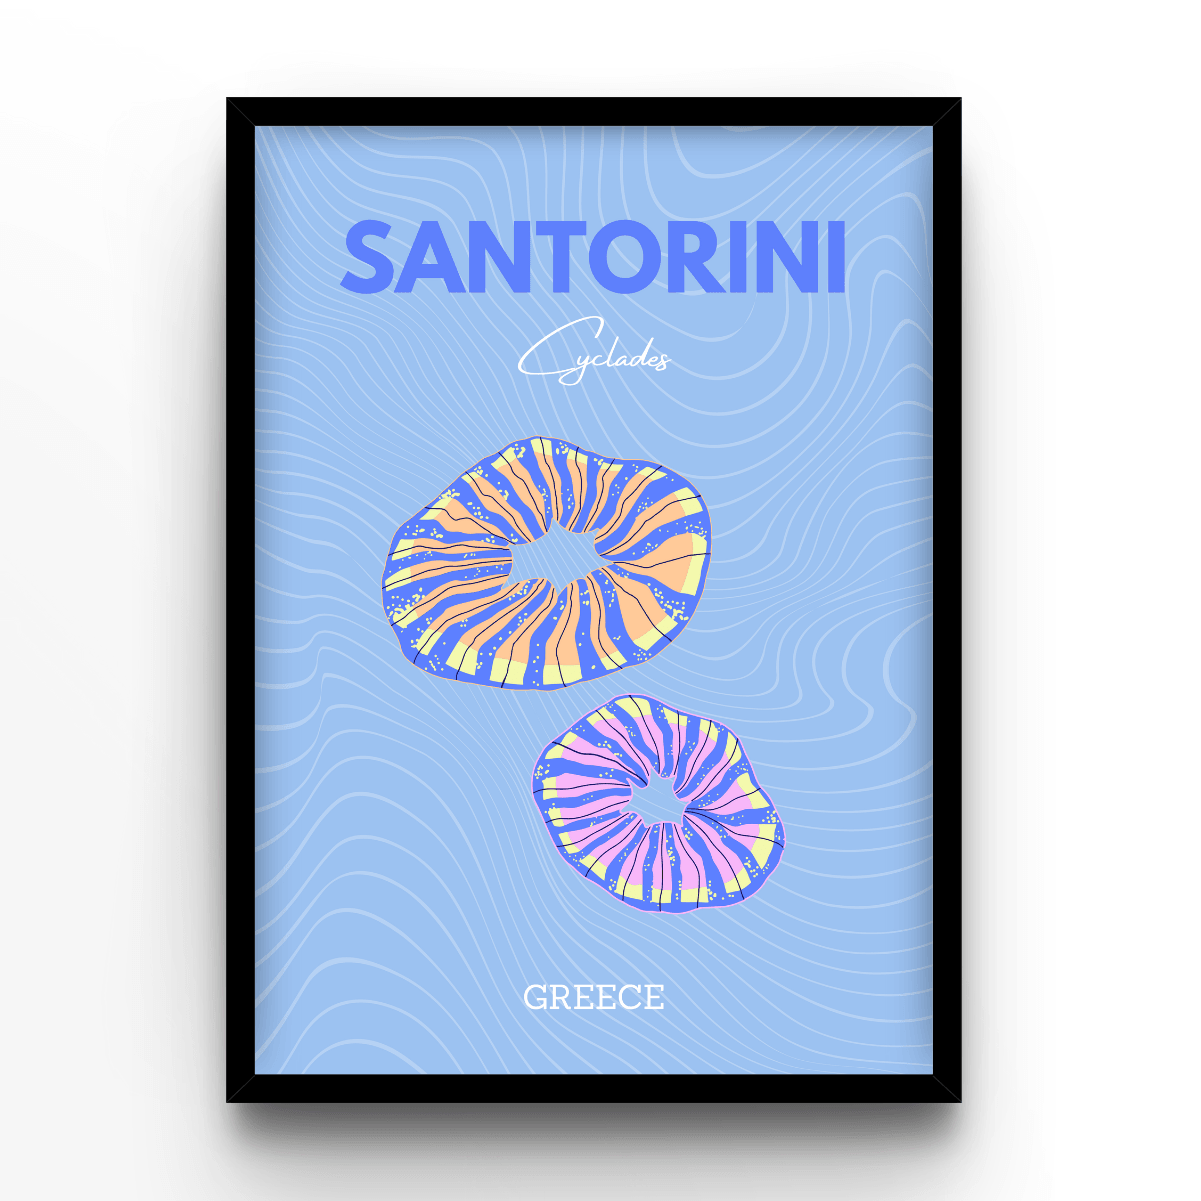 Santorini - A4, A3, A2 Posters Base - Poster Print Shop / Art Prints / PostersBase